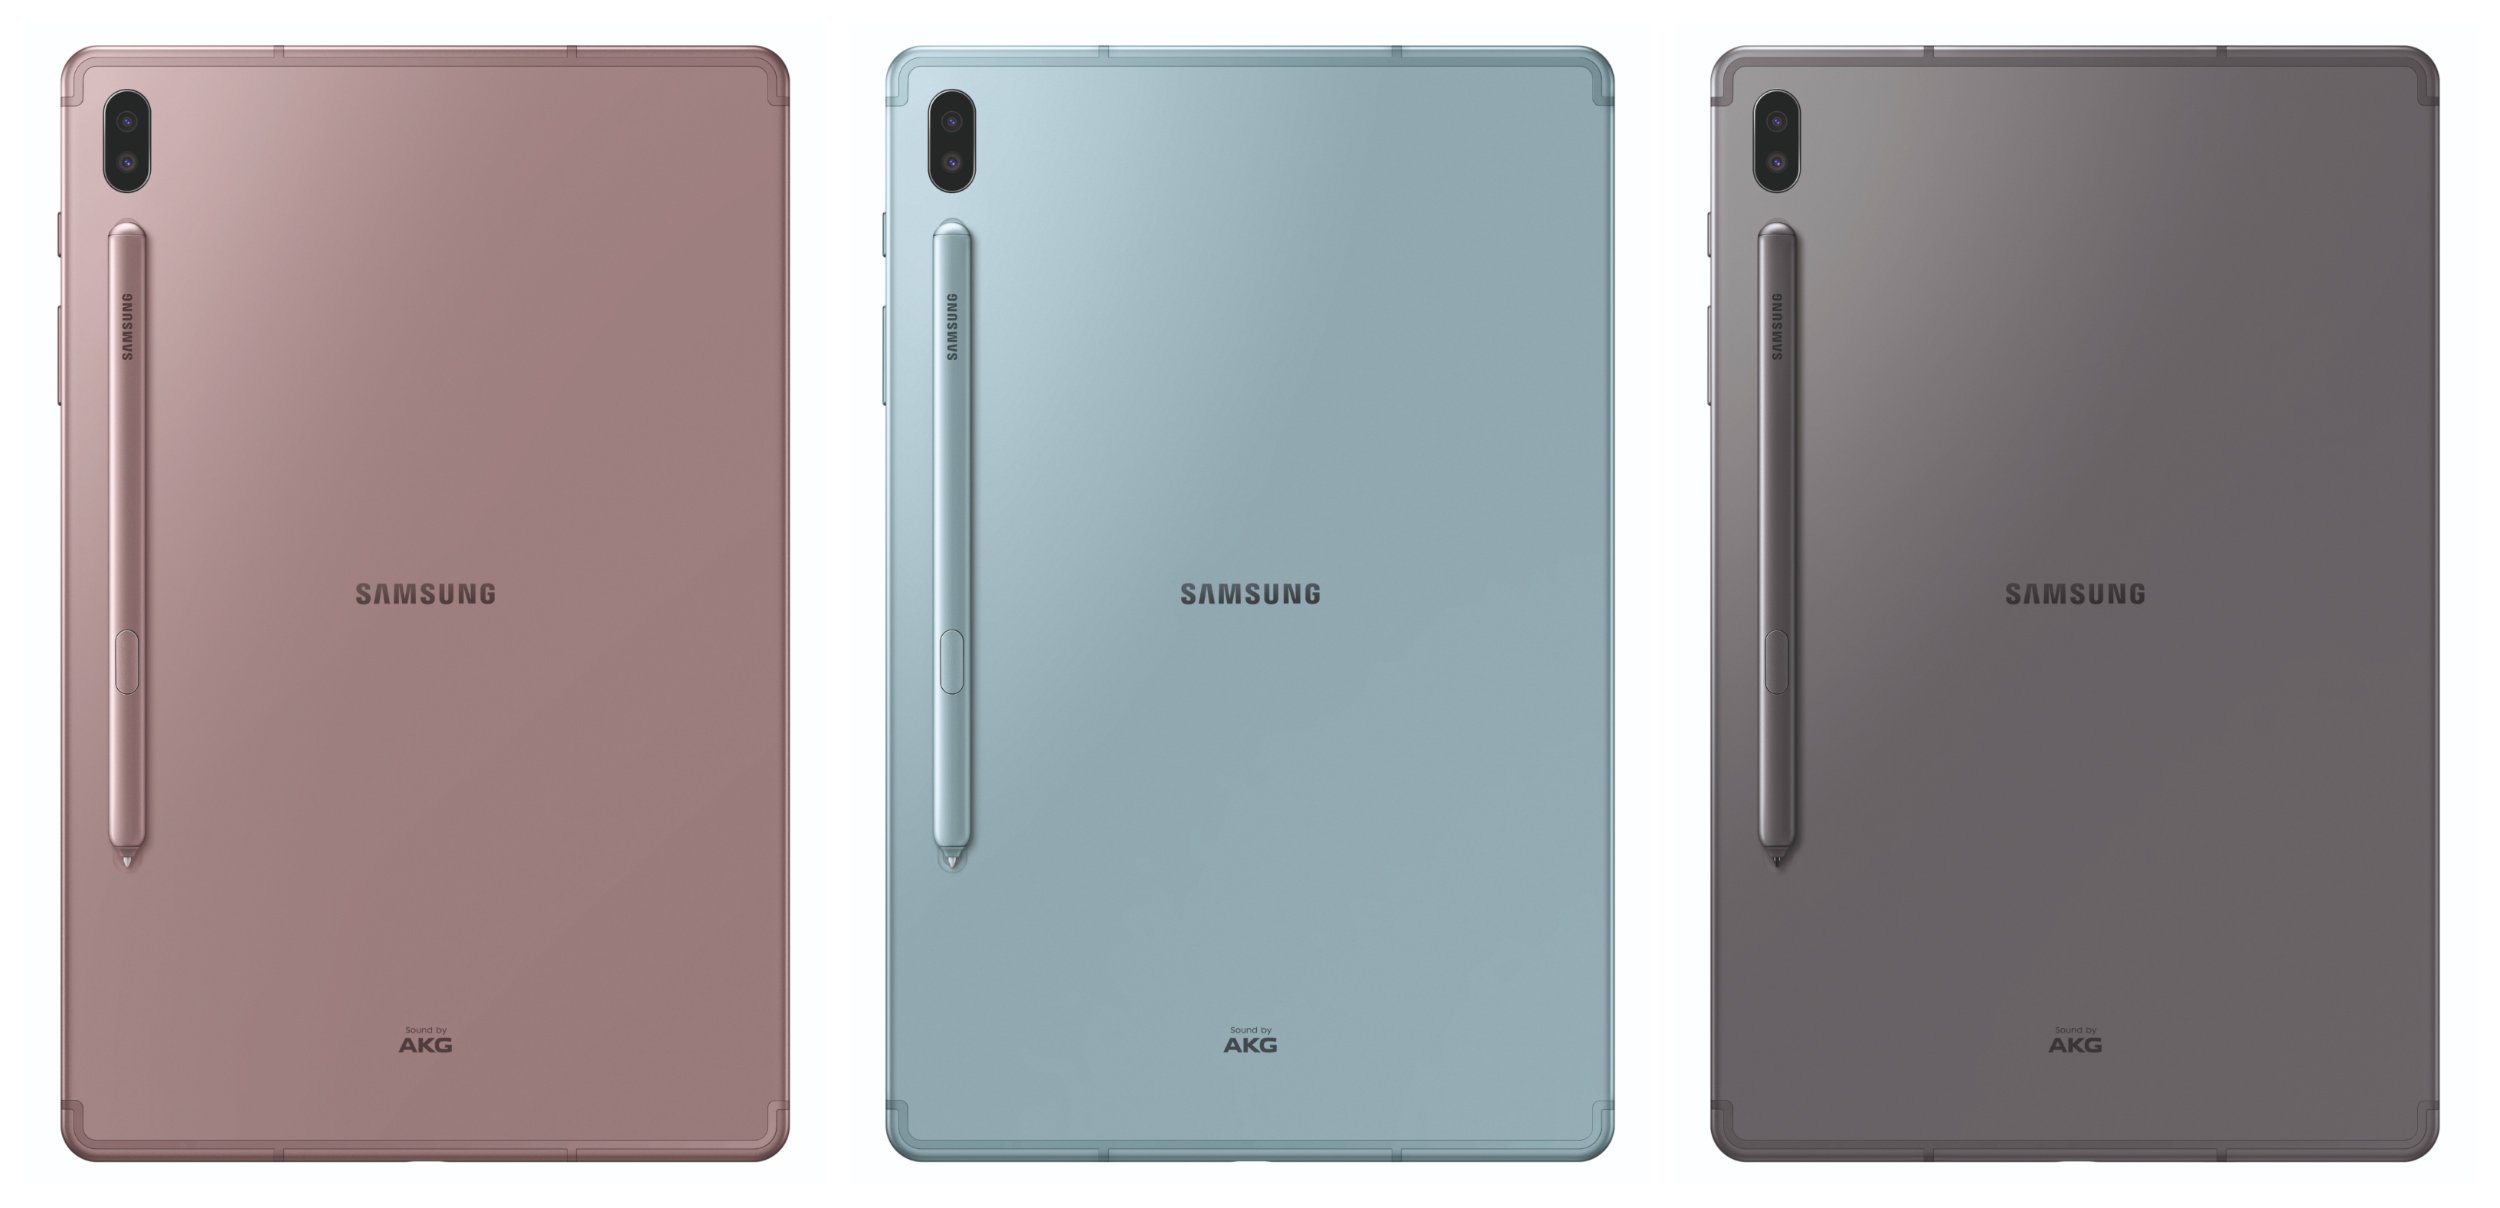 Das Samsung Galaxy Tab S6 kommt in drei Farben daher und sticht besonders durch die magnetische Halterung für den S-Pen auf der Rückseite hervor.